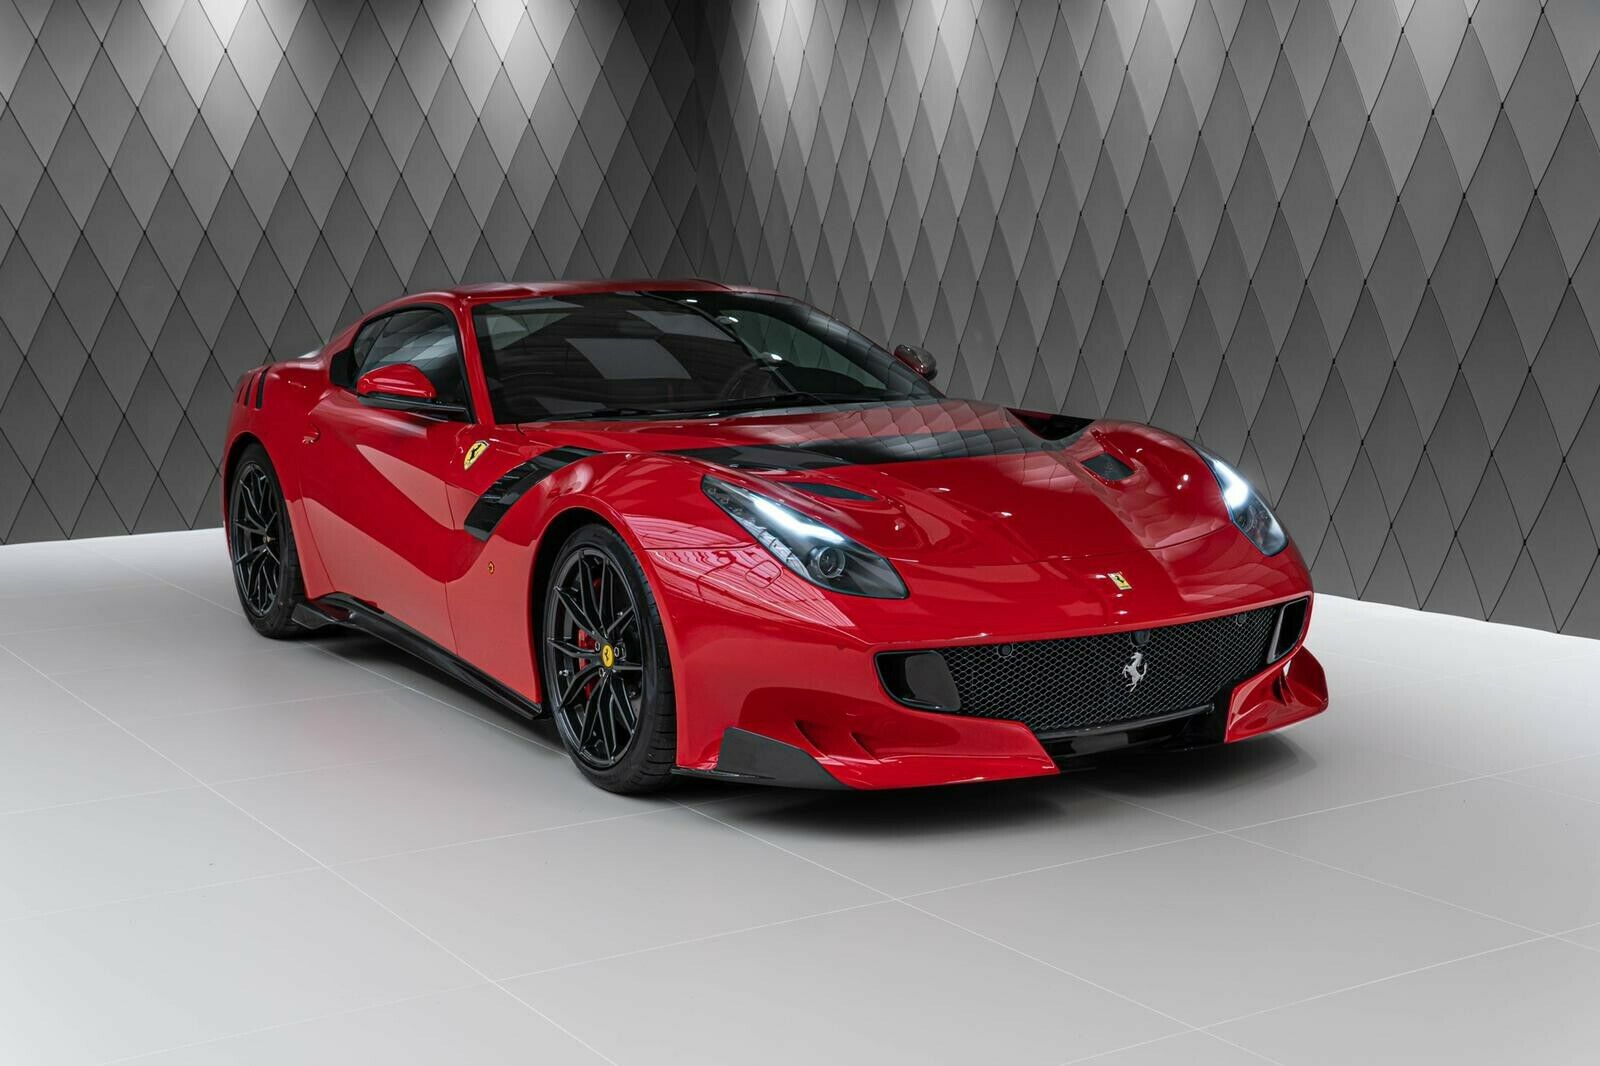 The Limited Edition Ferrari F12 TDF